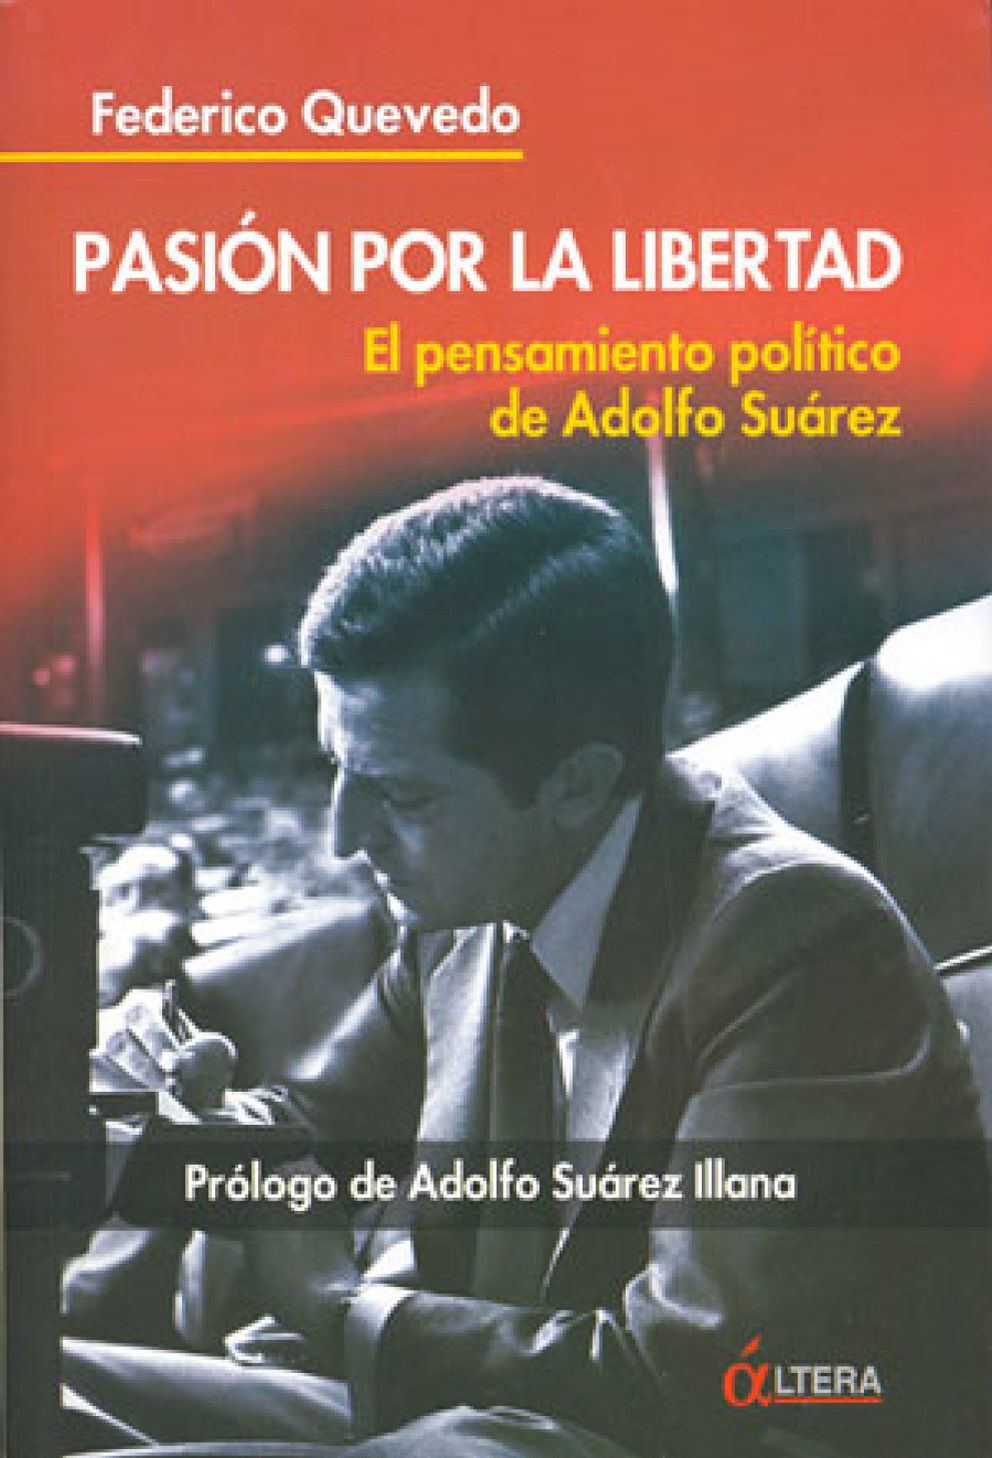 Foto: Rajoy homenajea a Suárez como símbolo de la derecha democrática y ejemplo para el PP del siglo XXI